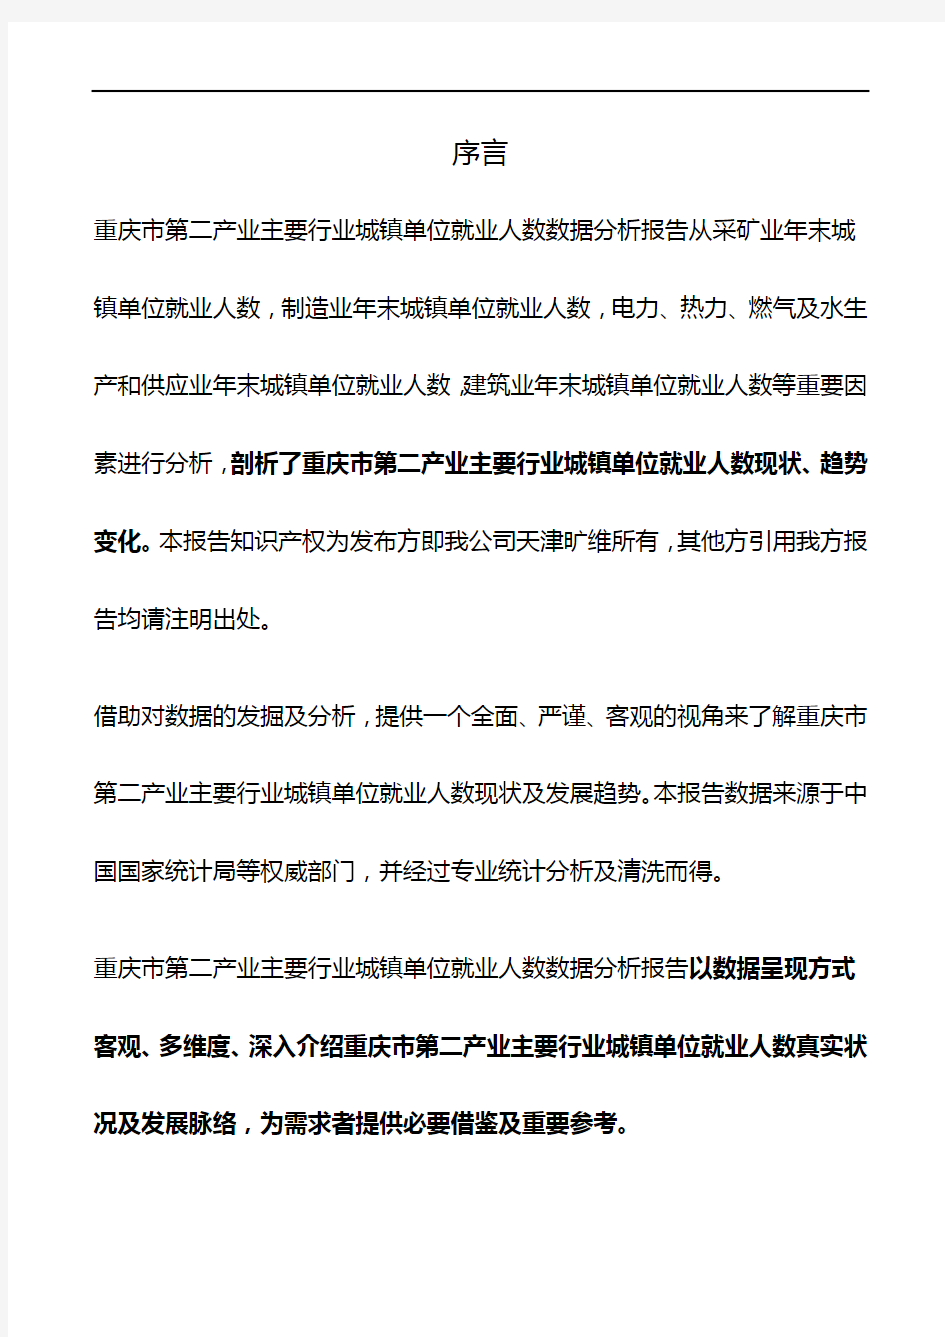 重庆市(全市)第二产业主要行业城镇单位就业人数3年数据分析报告2019版